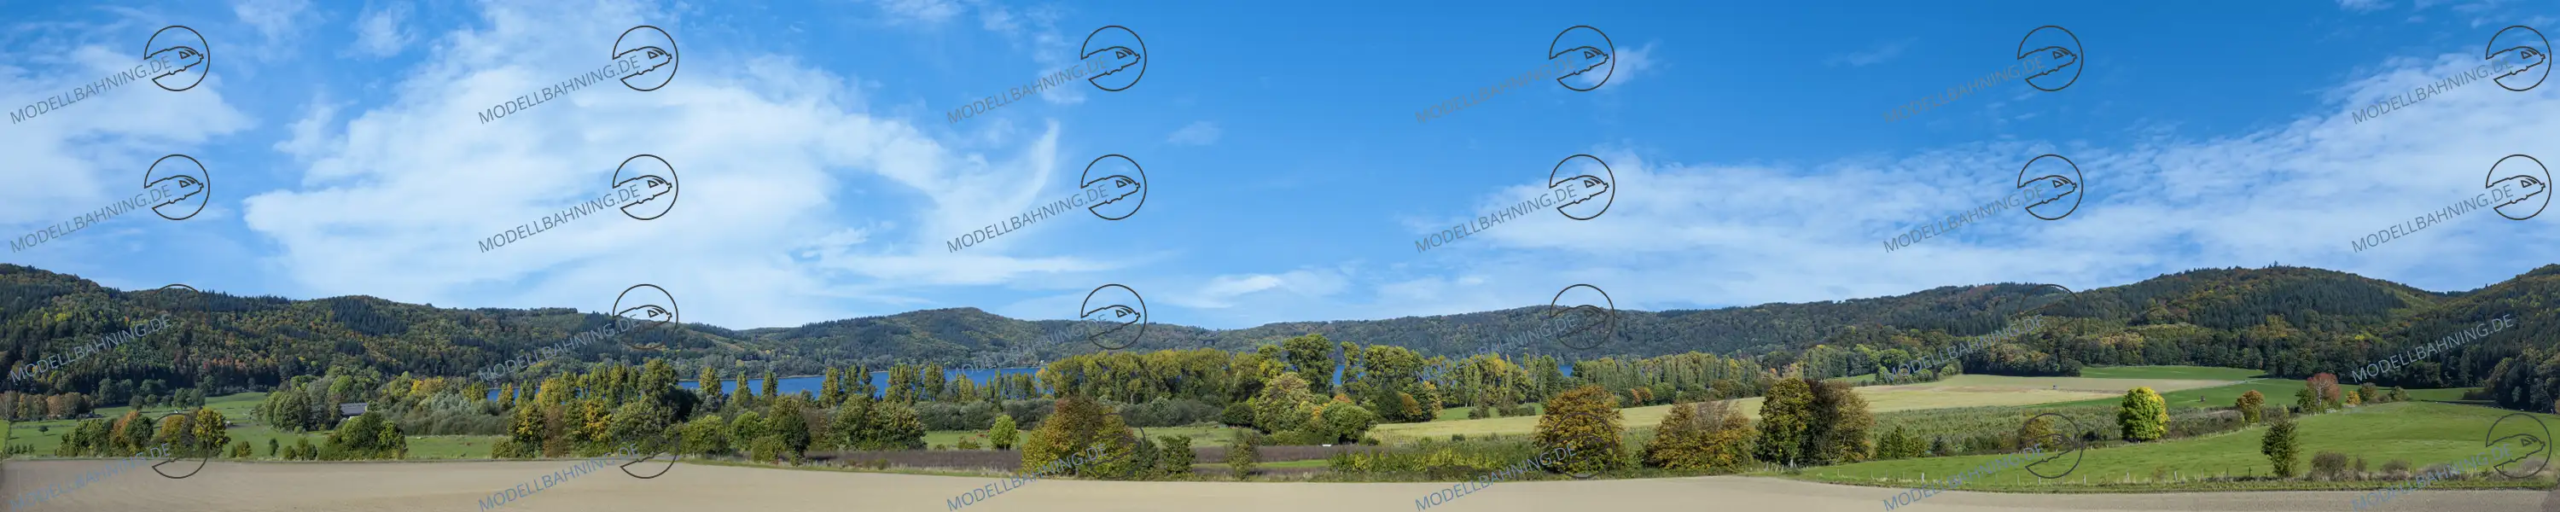 Modellbahnhintergrund "Eifel" mit Vulkaneifel-Maar, gepflügten Feldern, Wanderwegen und Bänken, 450 cm breit, endlos erweiterbar